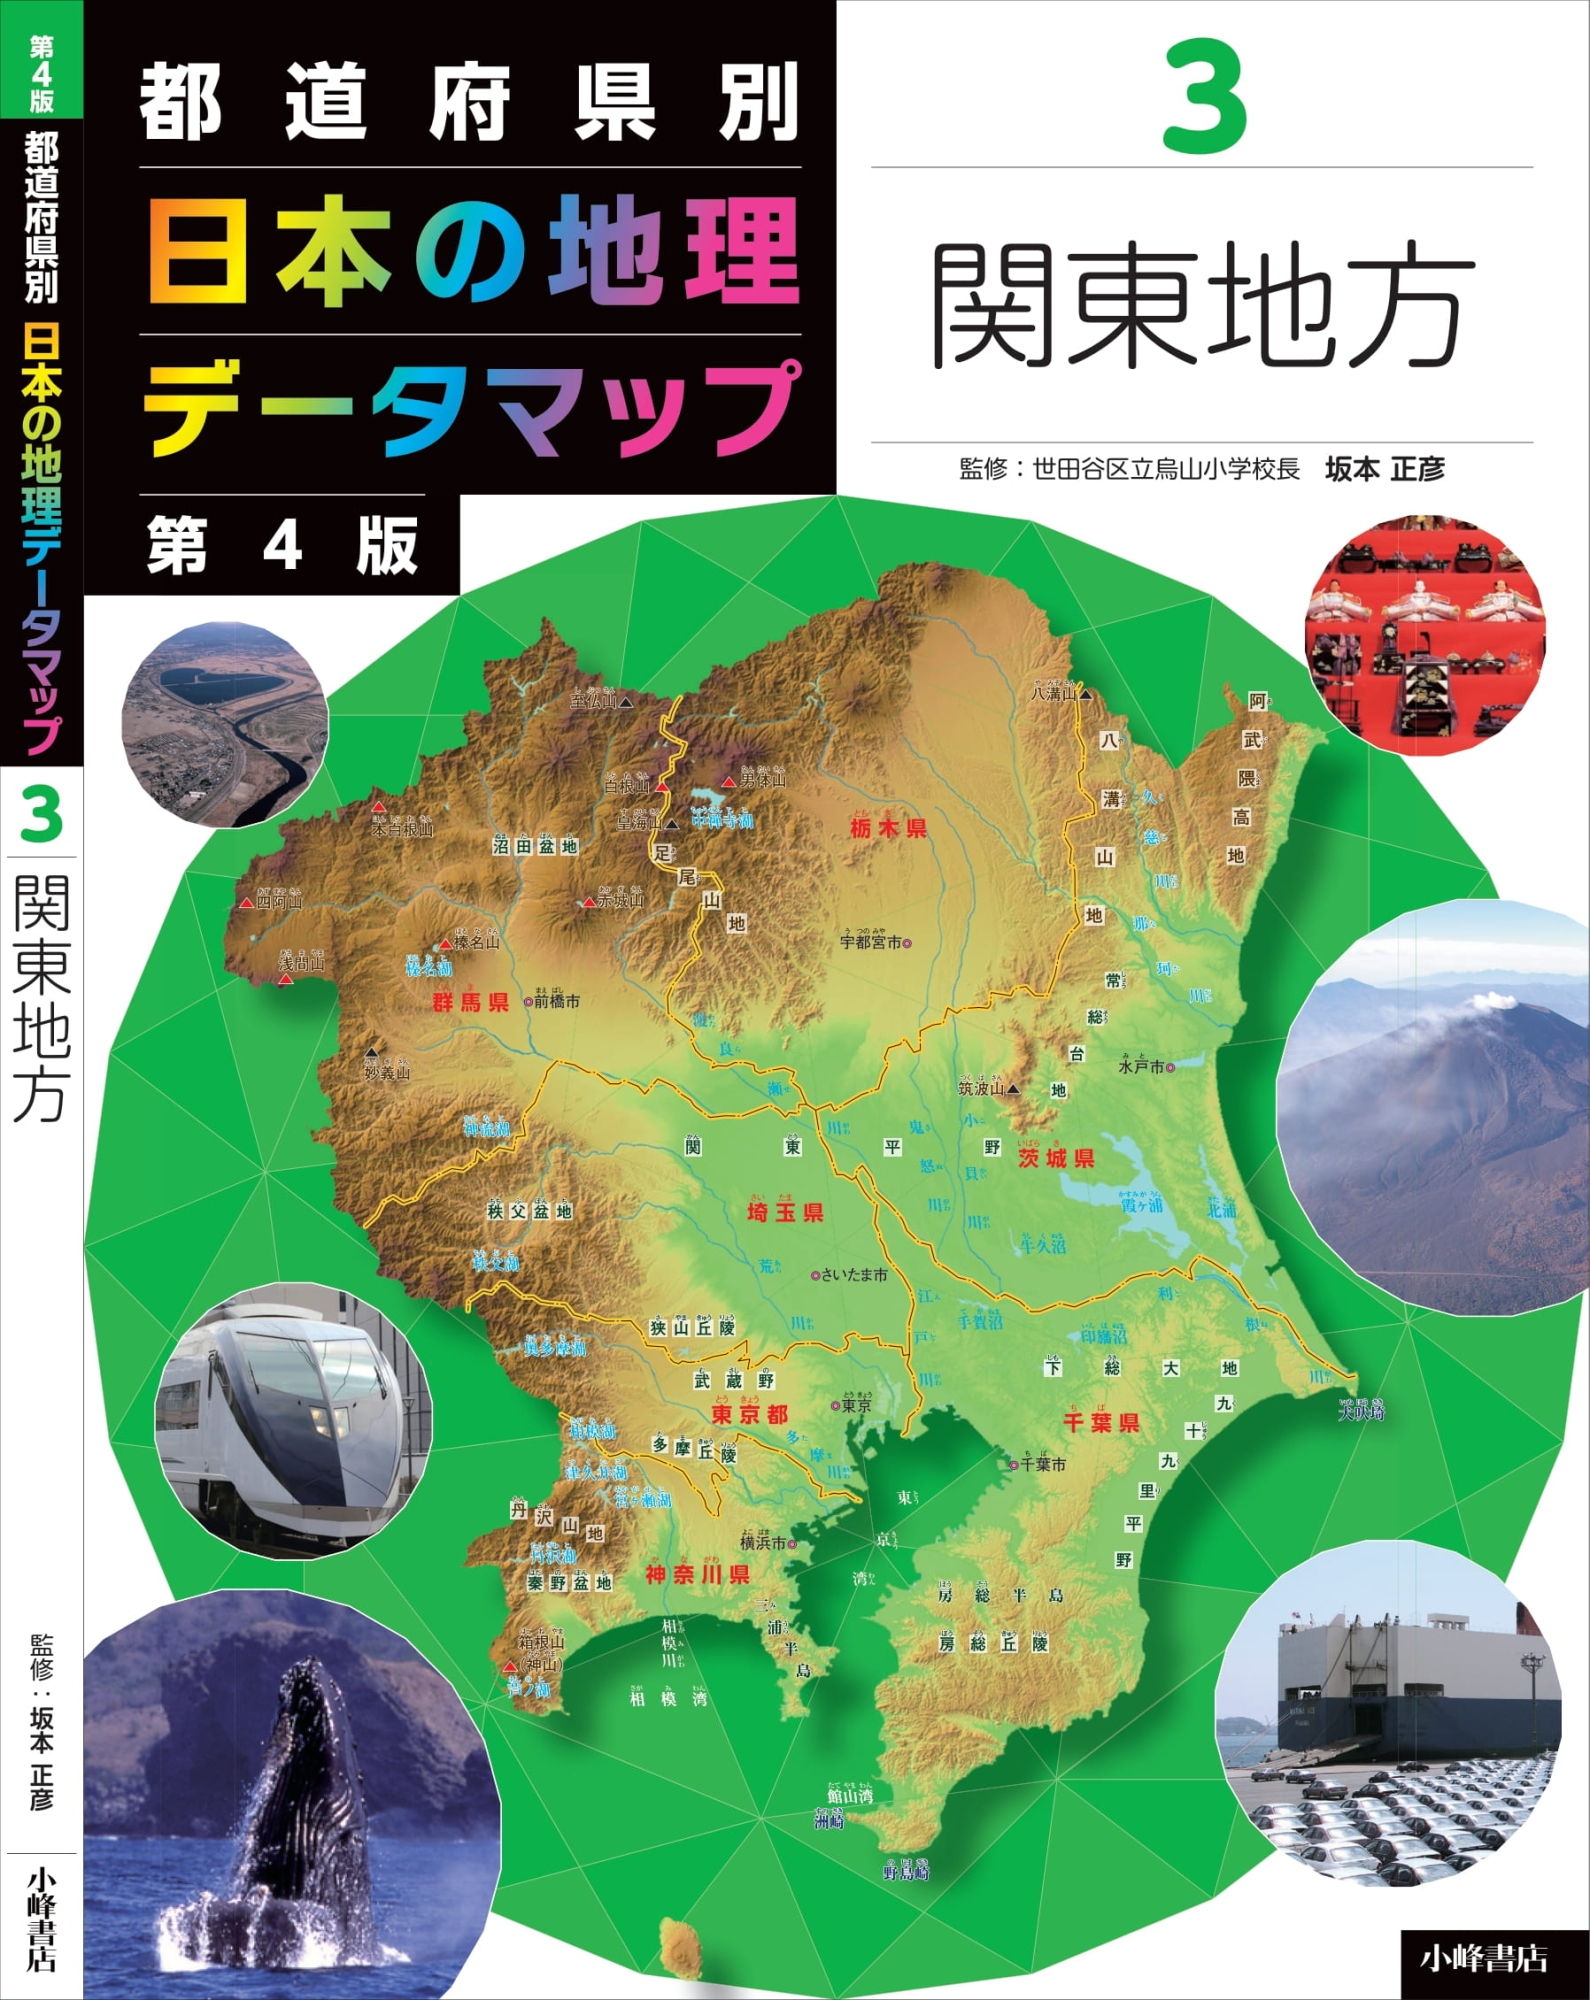 【美品】都道府県別日本の地理データマップセット(全8巻セット)必要な方いかがでしょうか